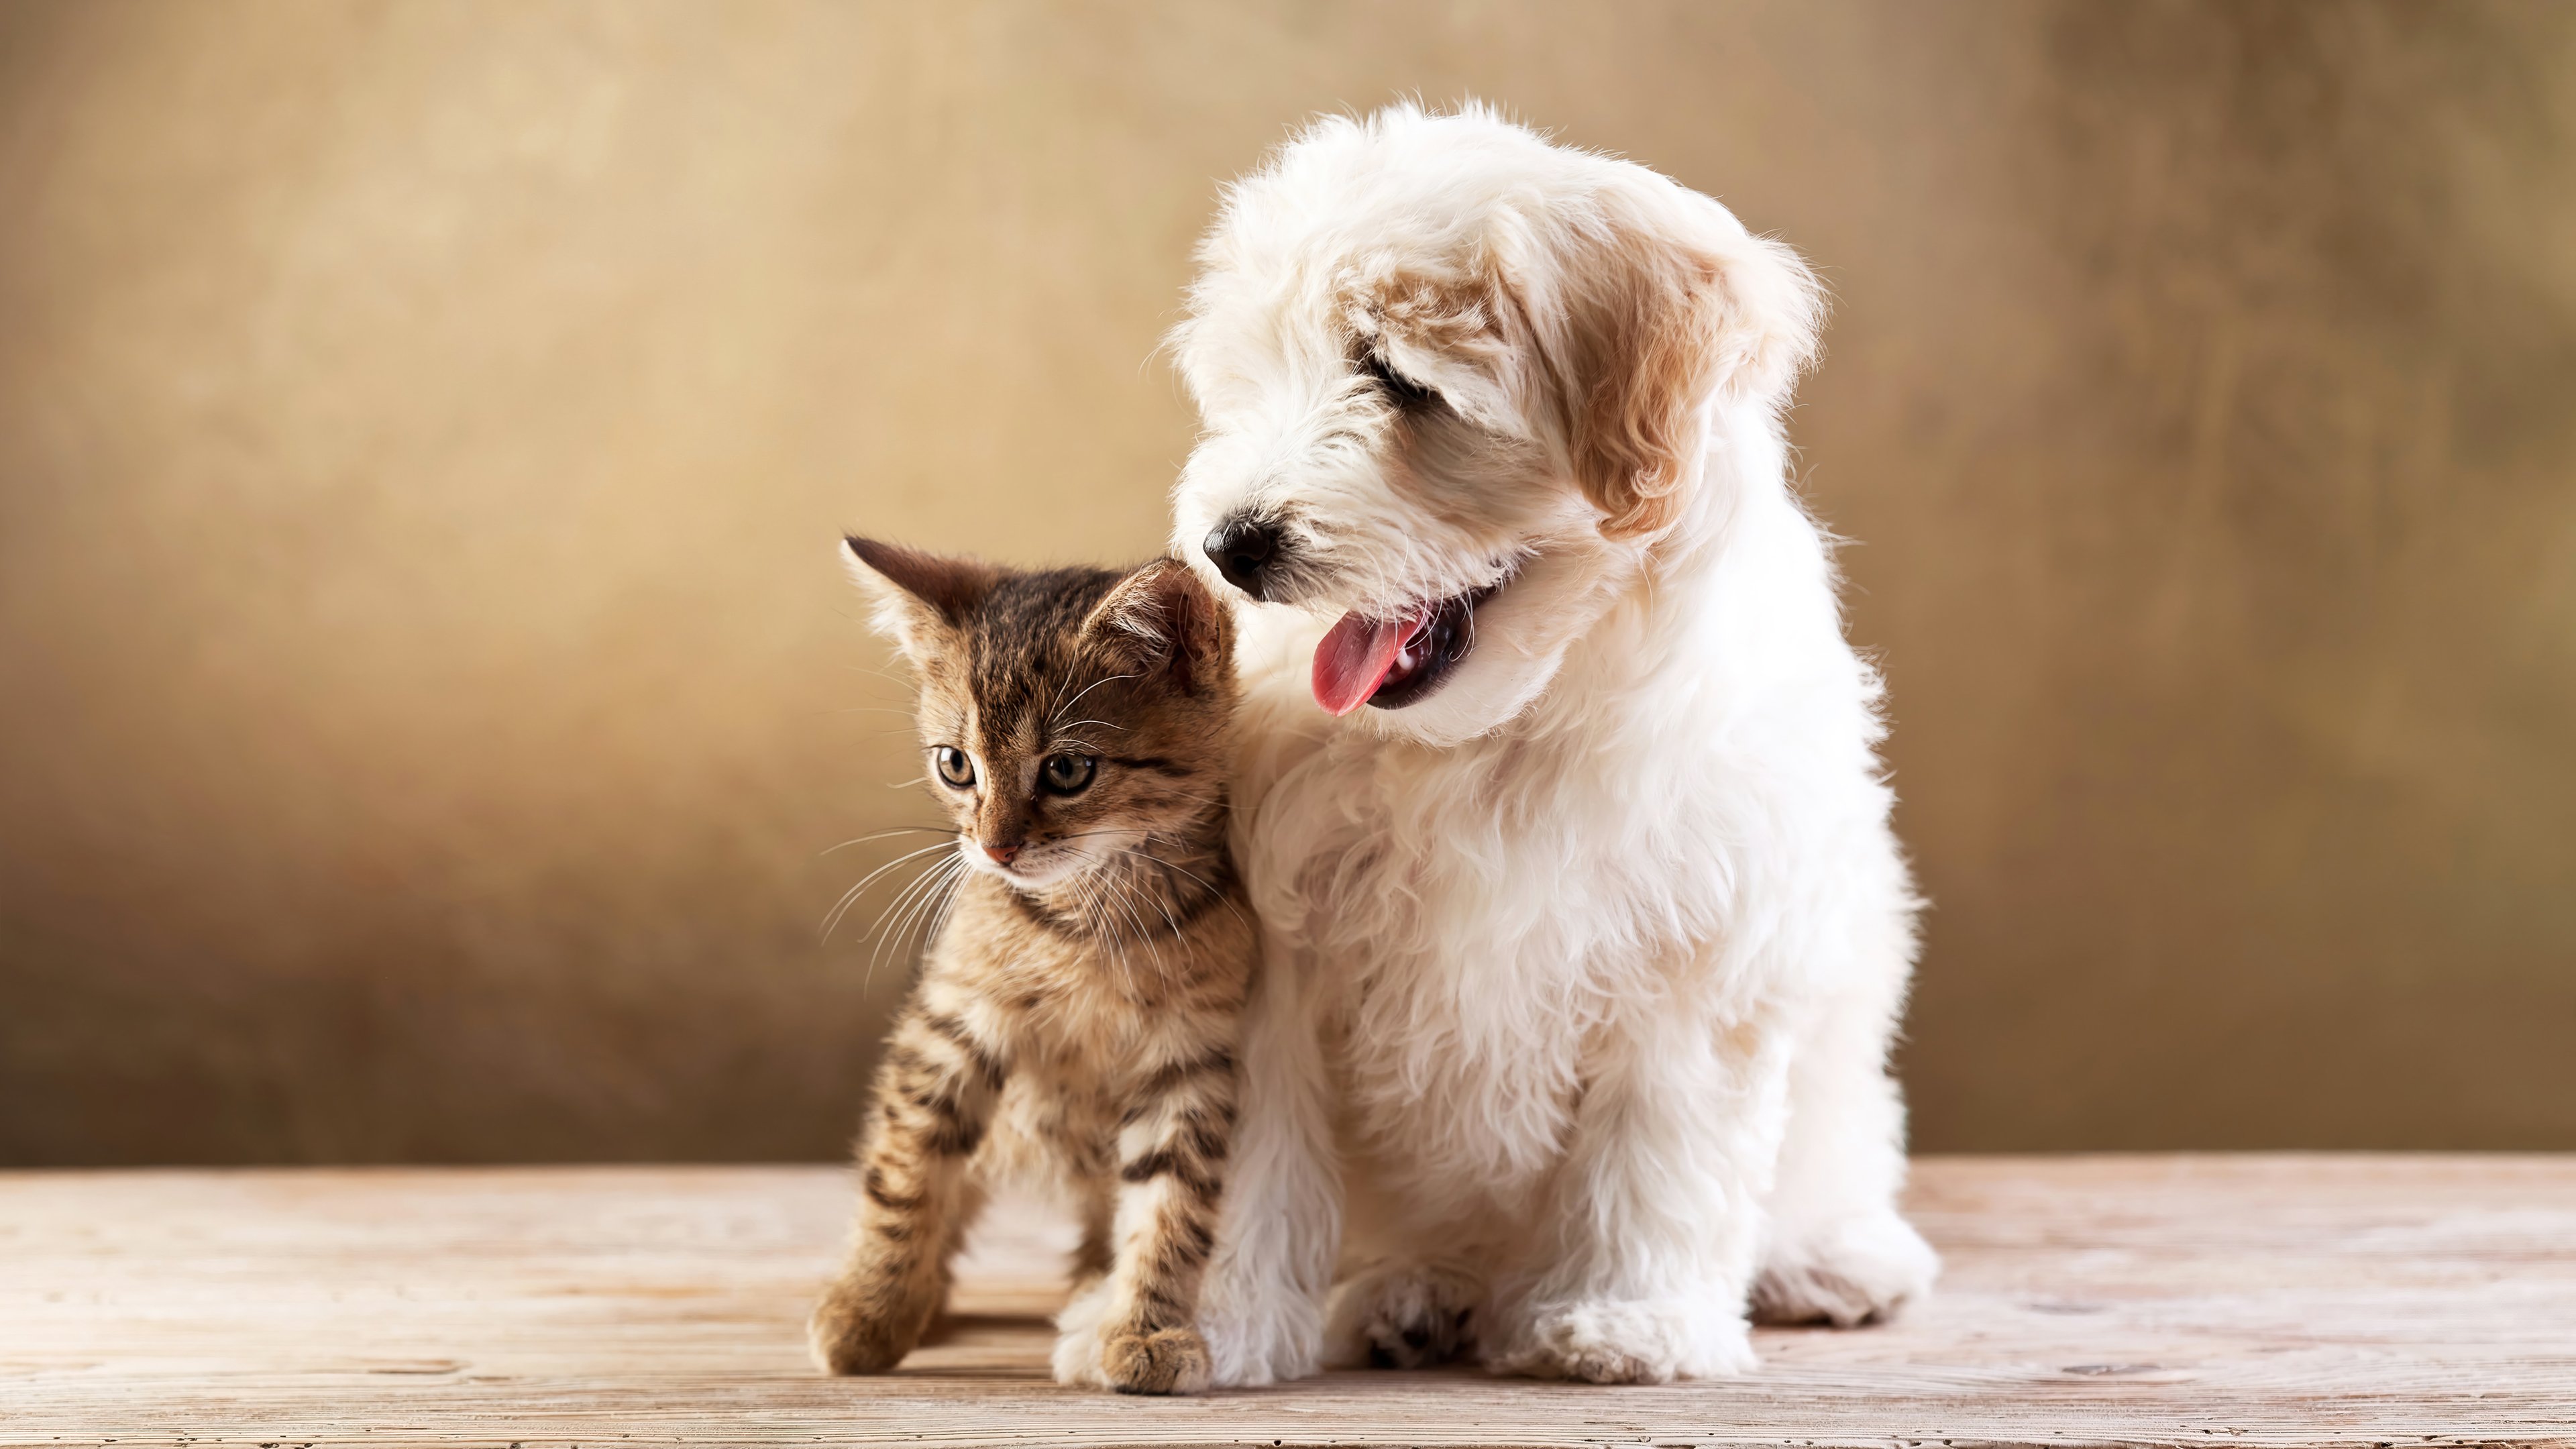 Wallpaper Puppy and kitten